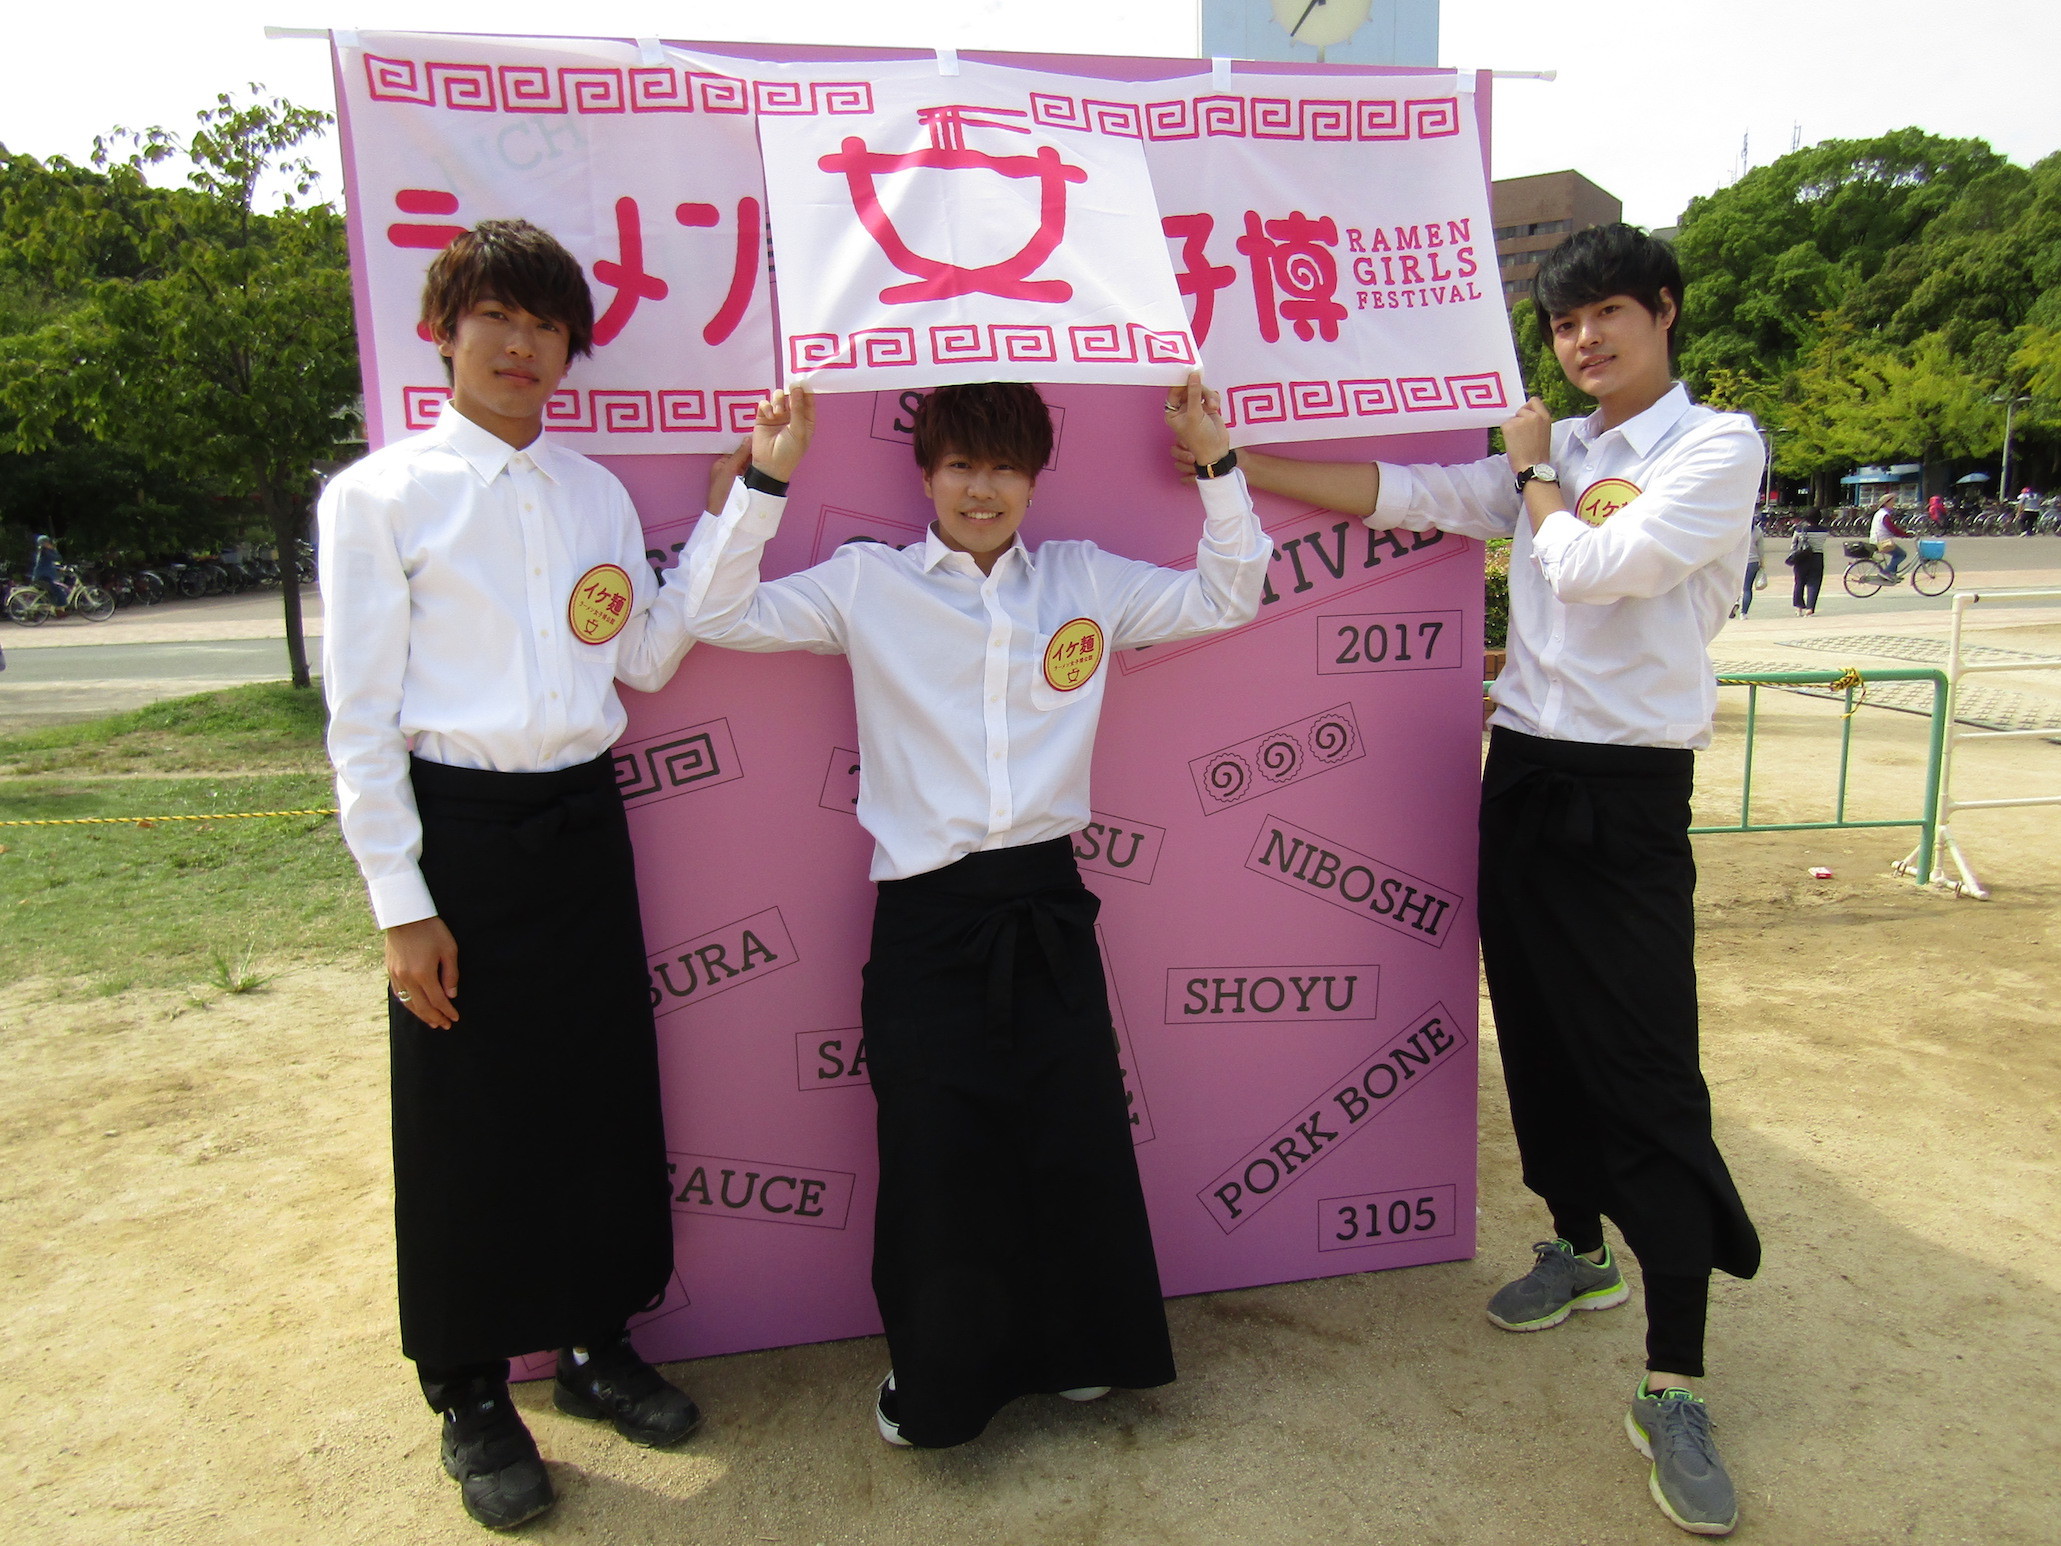 左からイケメンBoysエンタテインメント集団「Kansai Boys Project」の岸田朋大さん、小野泰征さん、内田将平さん